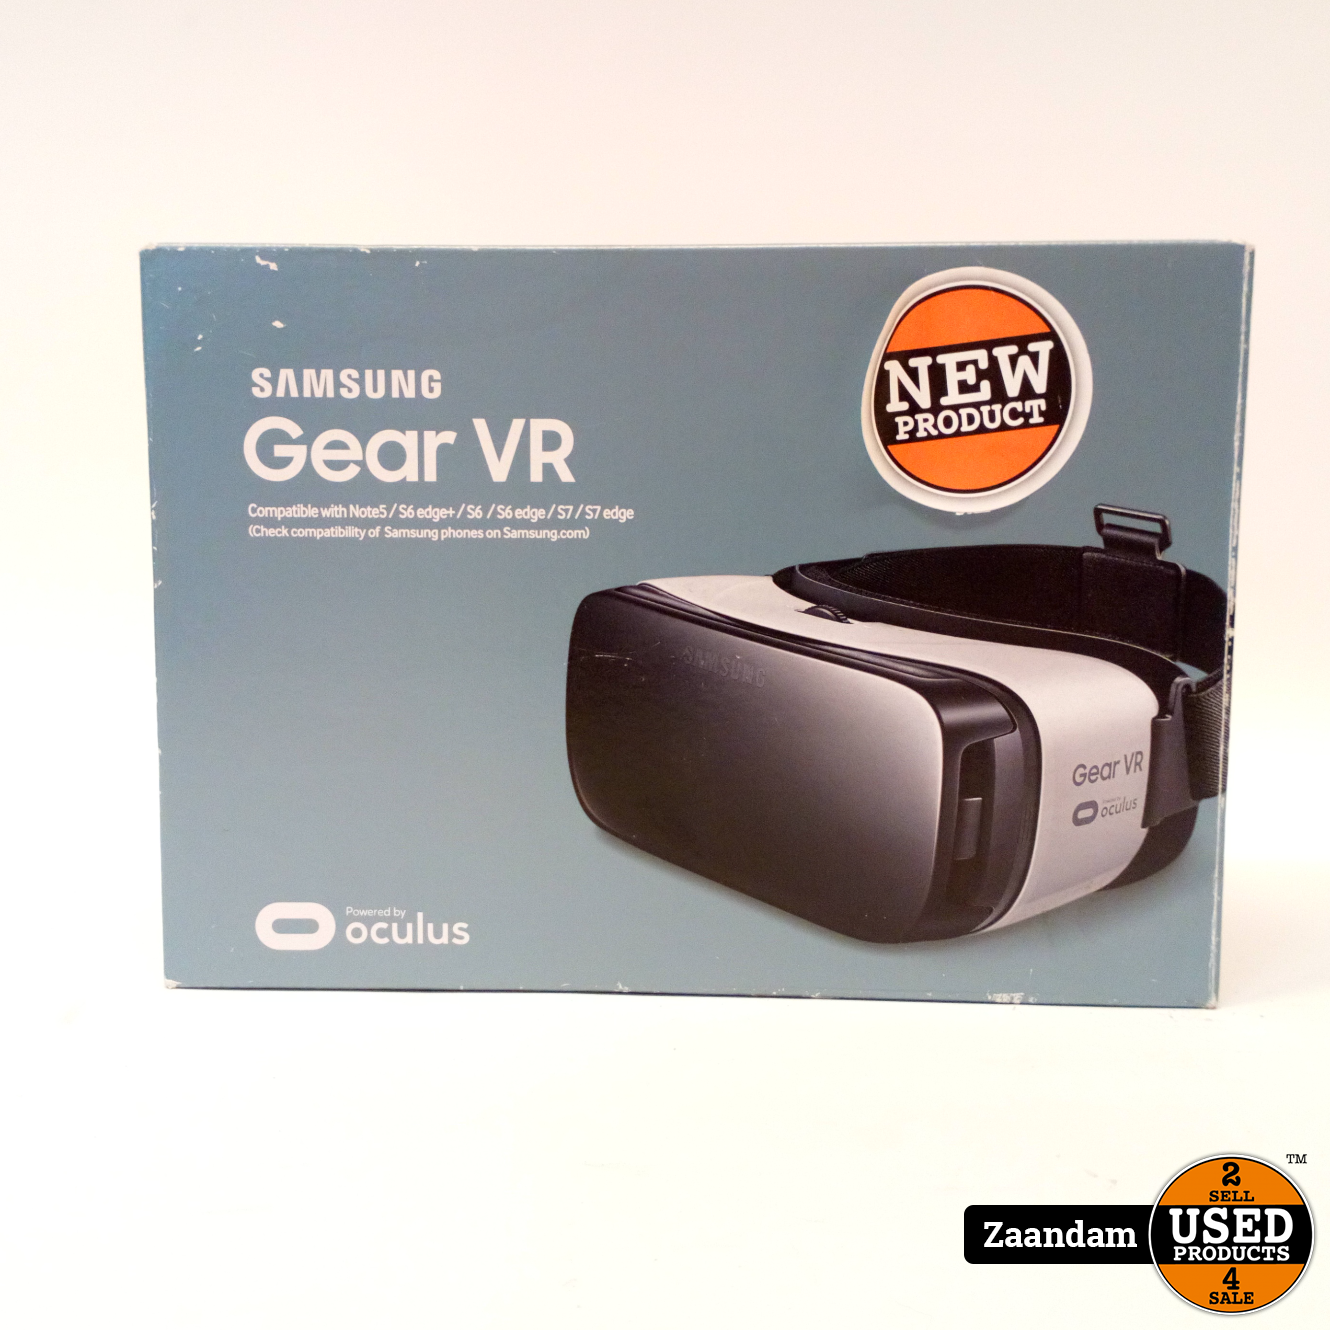 Samsung Gear VR Nieuw in doos - Used Zaandam